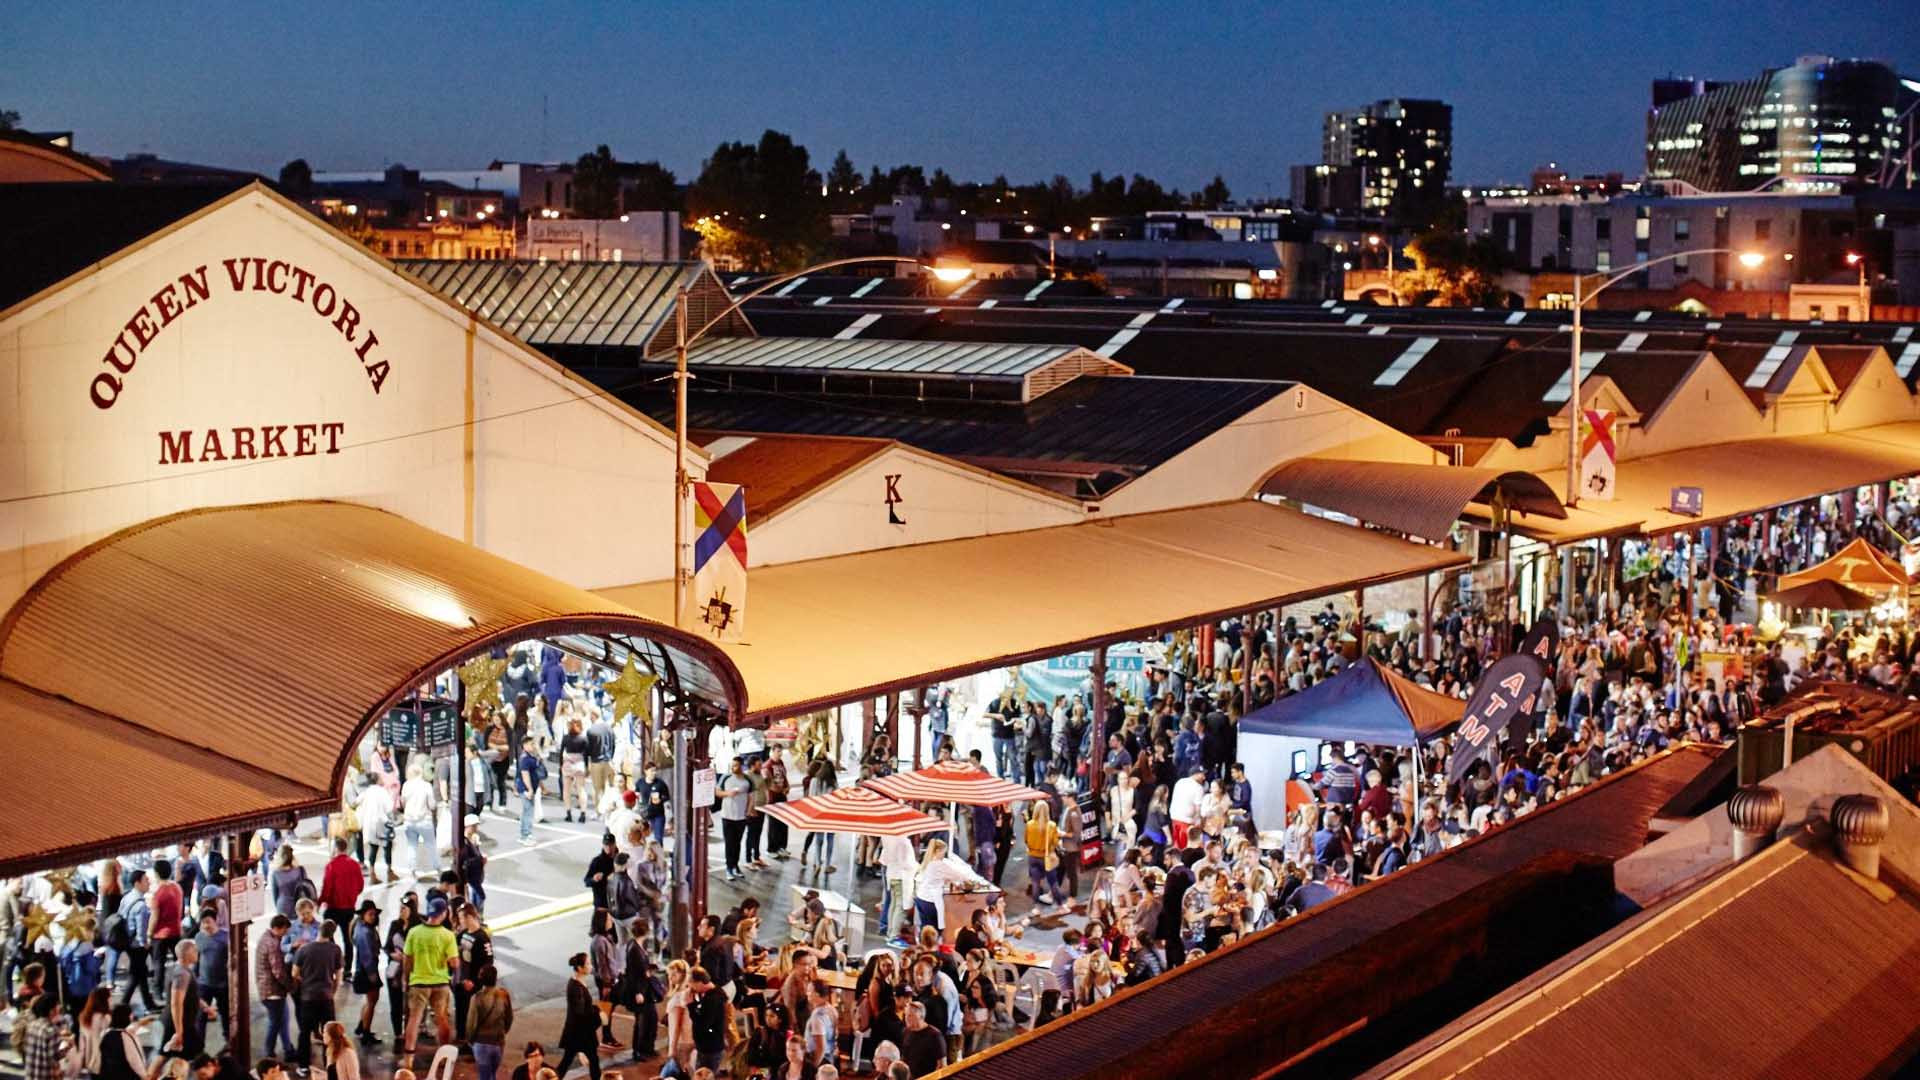 Tham quan chợ Nữ hoàng Victoria ngay giữa lòng thành phố Melbourne hiện đại - ảnh 2